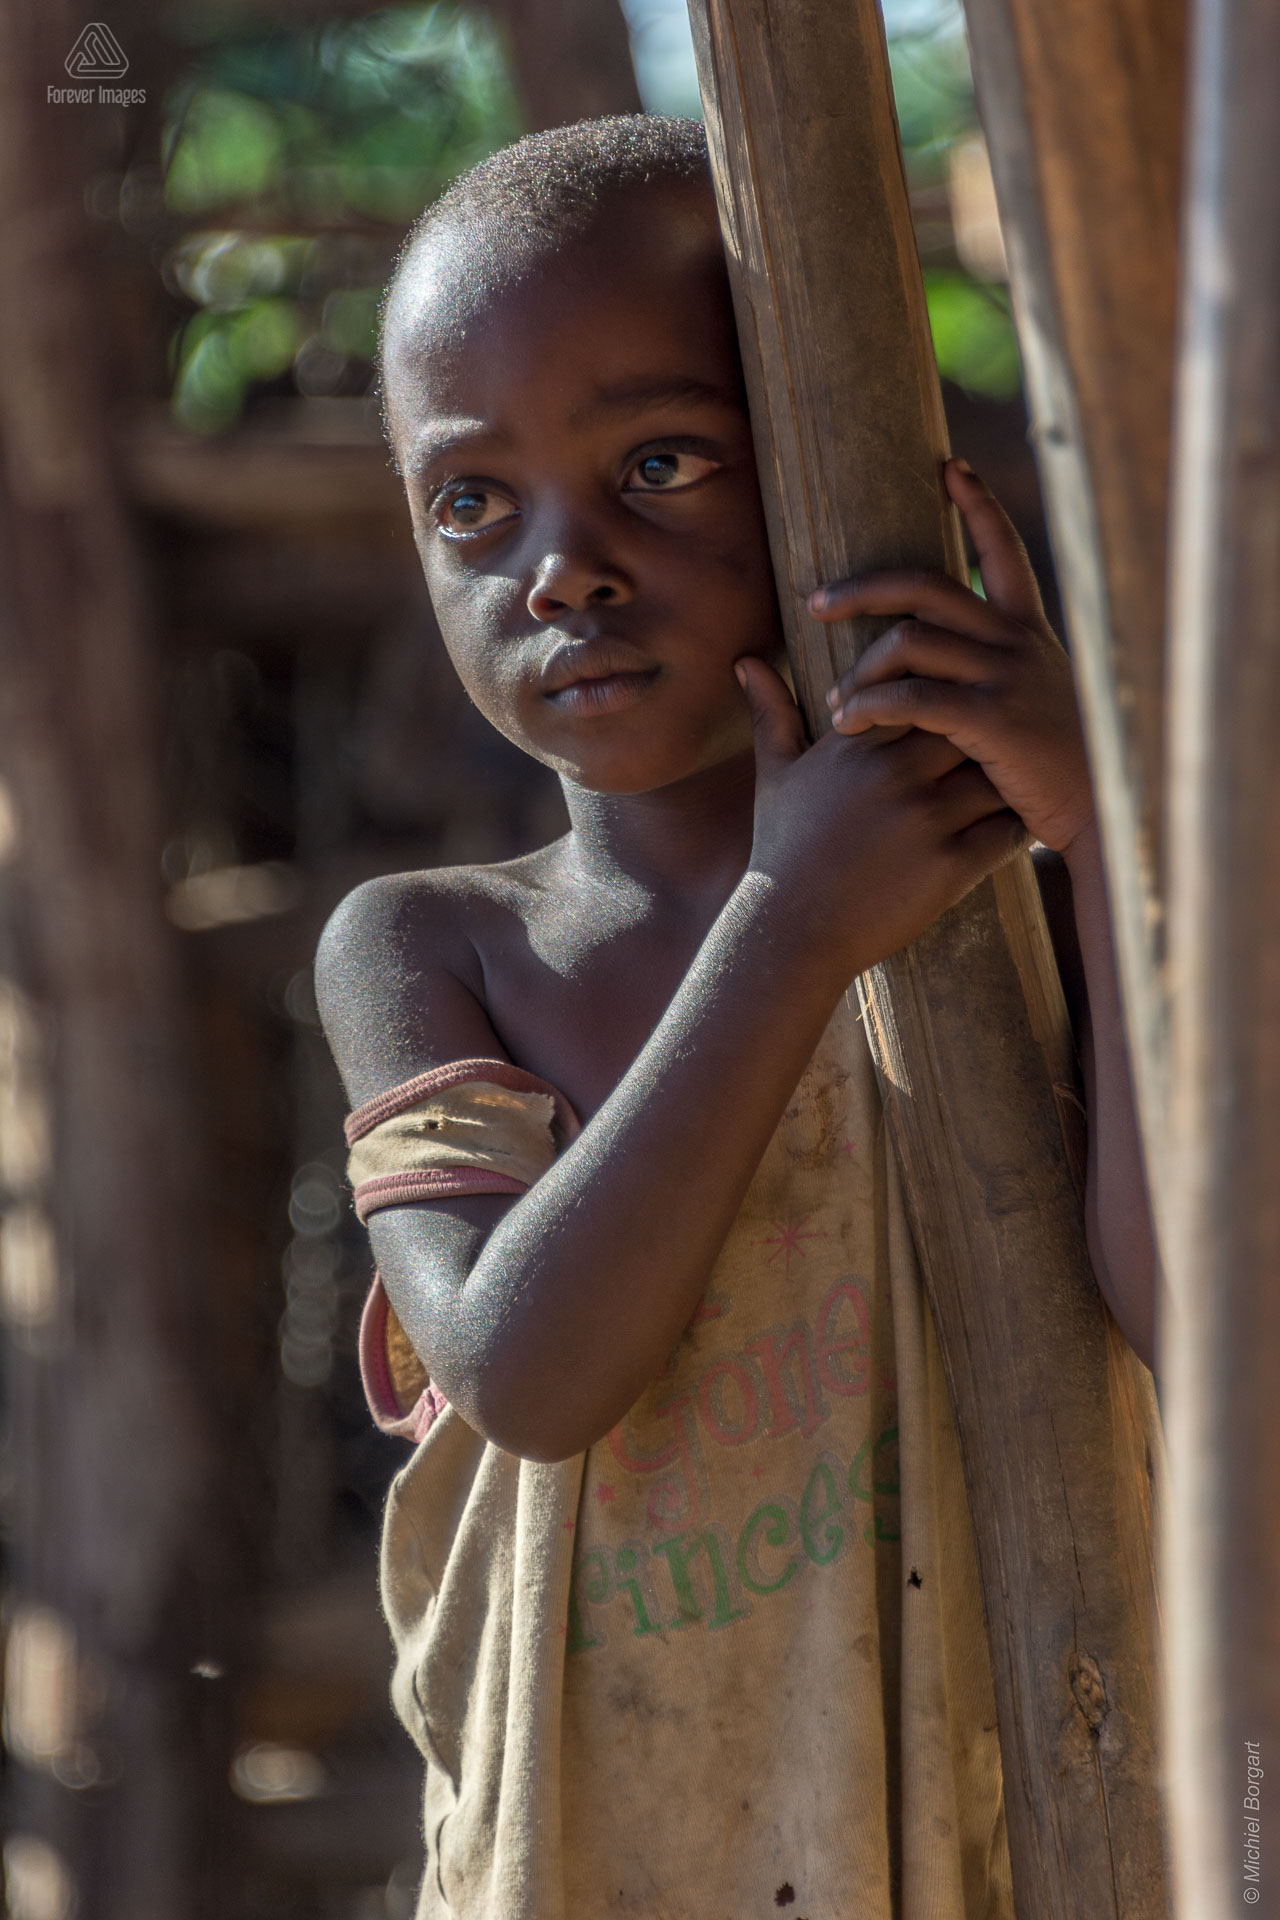 Portretfoto kindje houd hek vast Oeganda tijdens de Muskathlon van 2015 | Portretfotograaf Michiel Borgart - Forever Images.